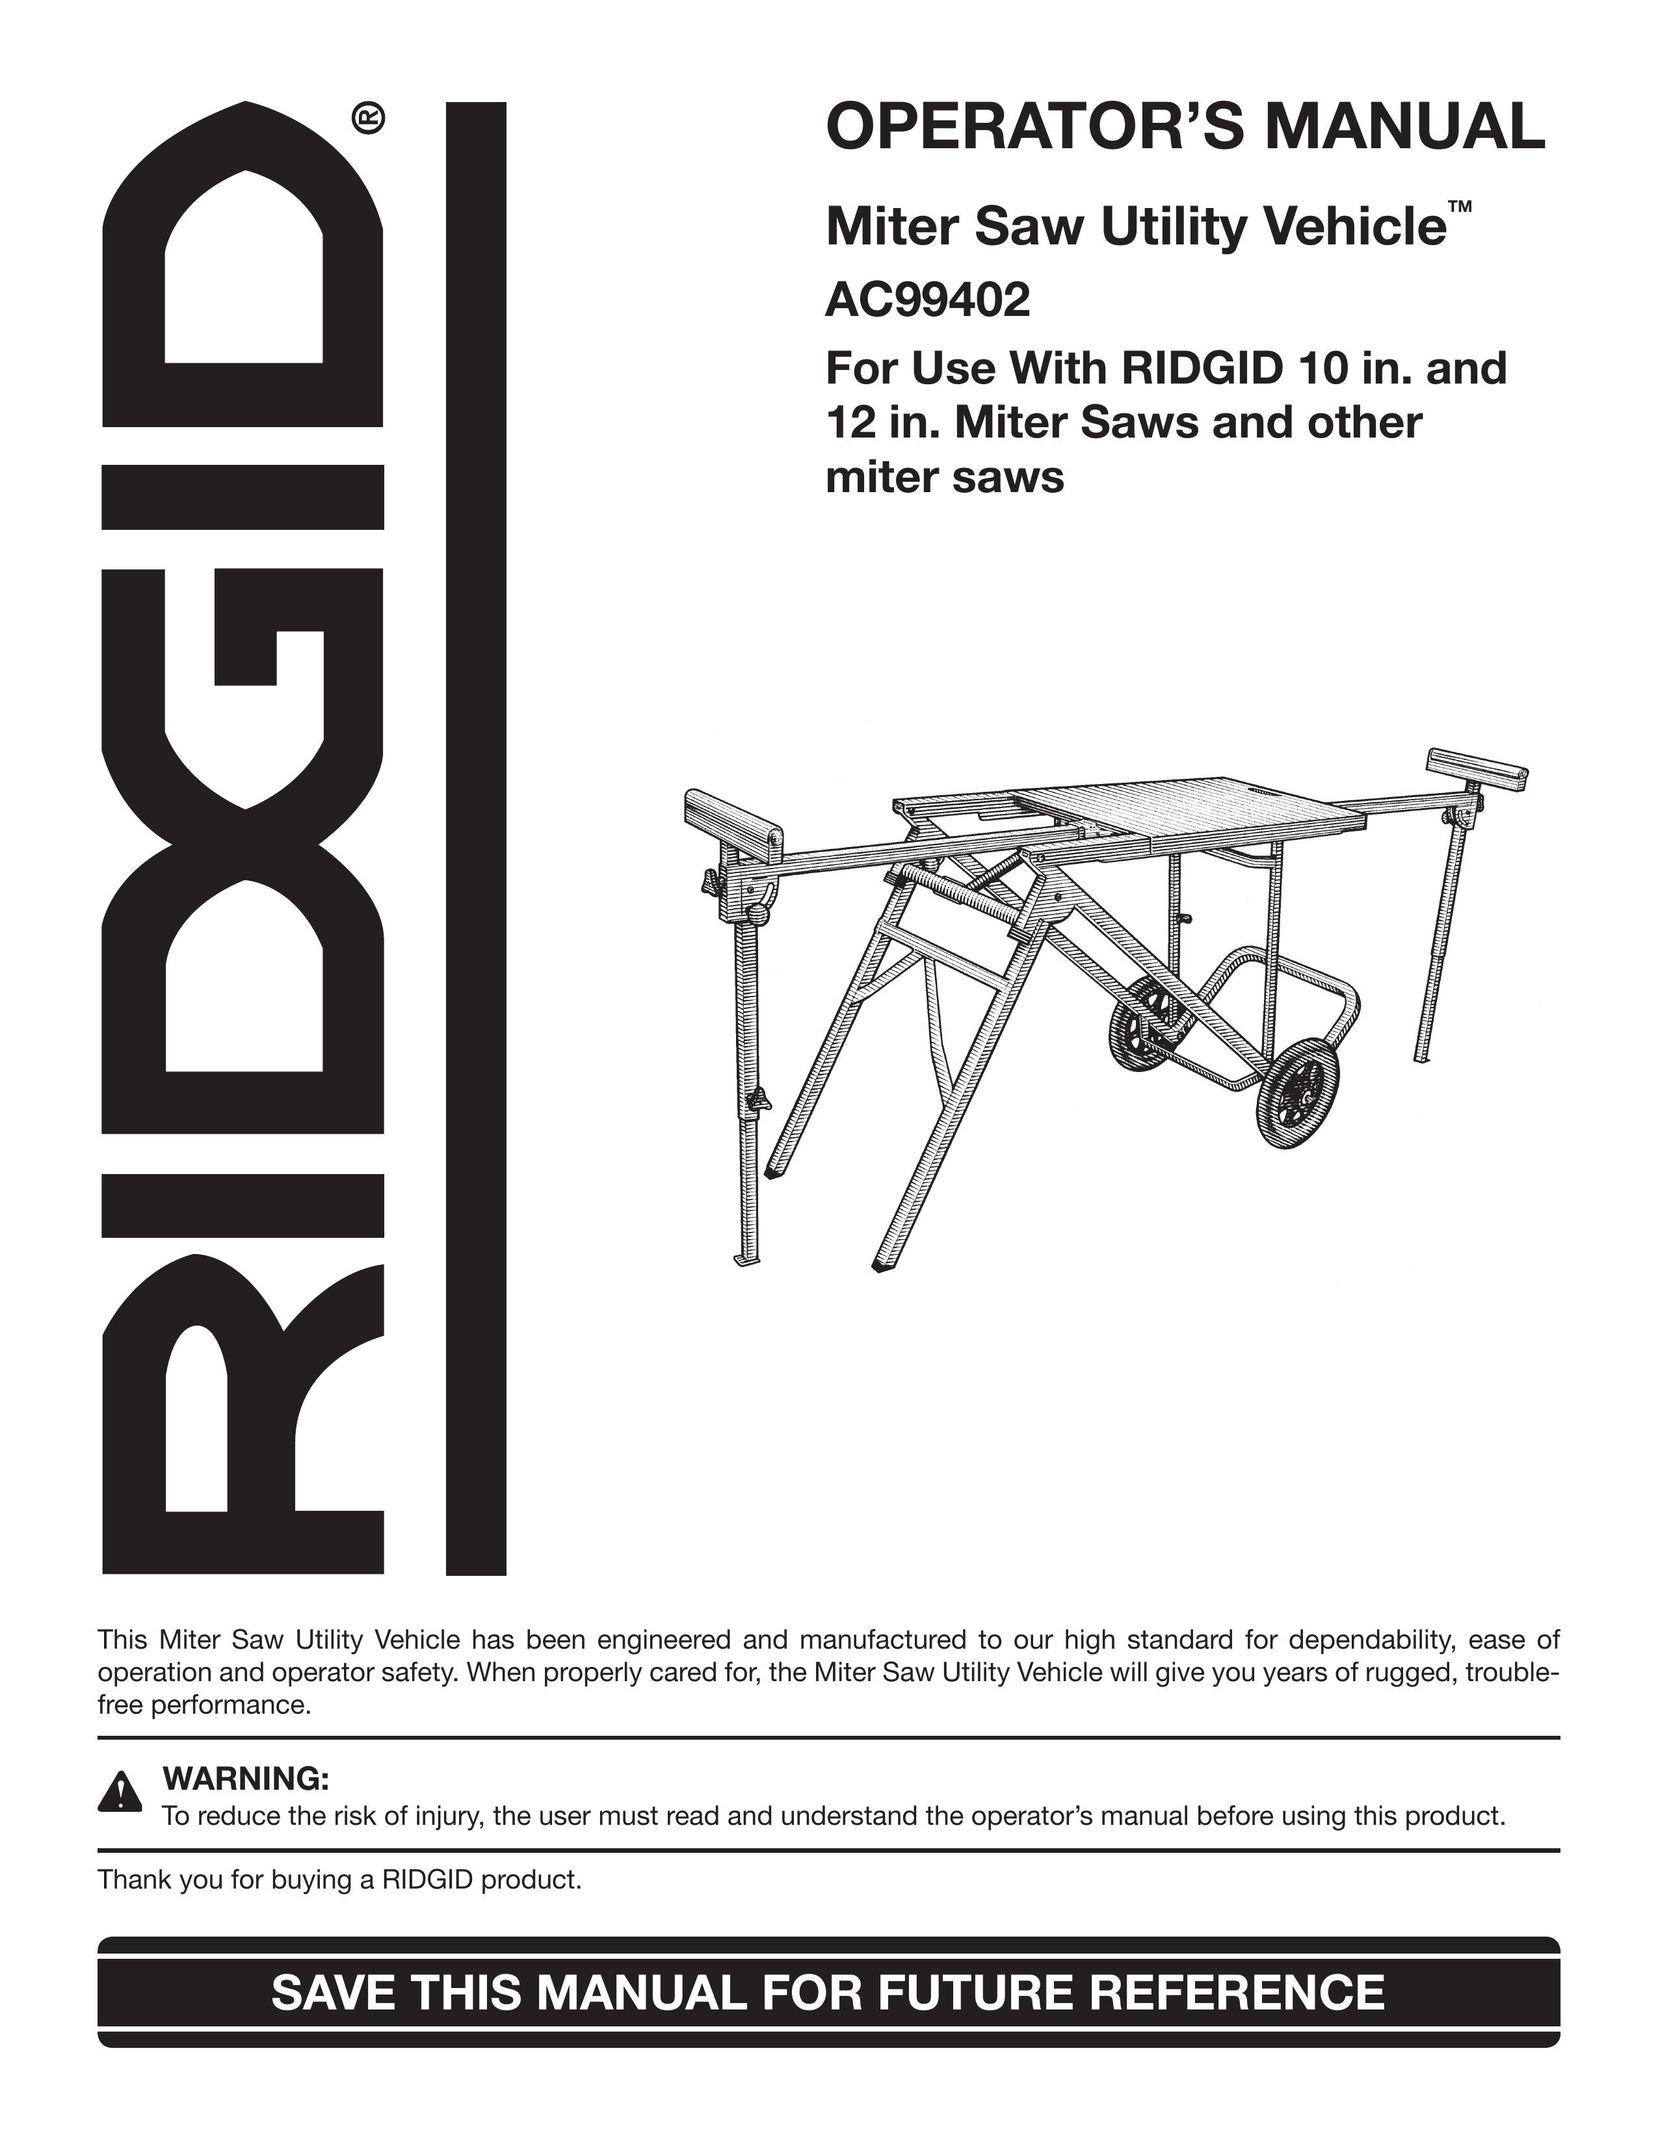 RIDGID AC99402 Saw User Manual